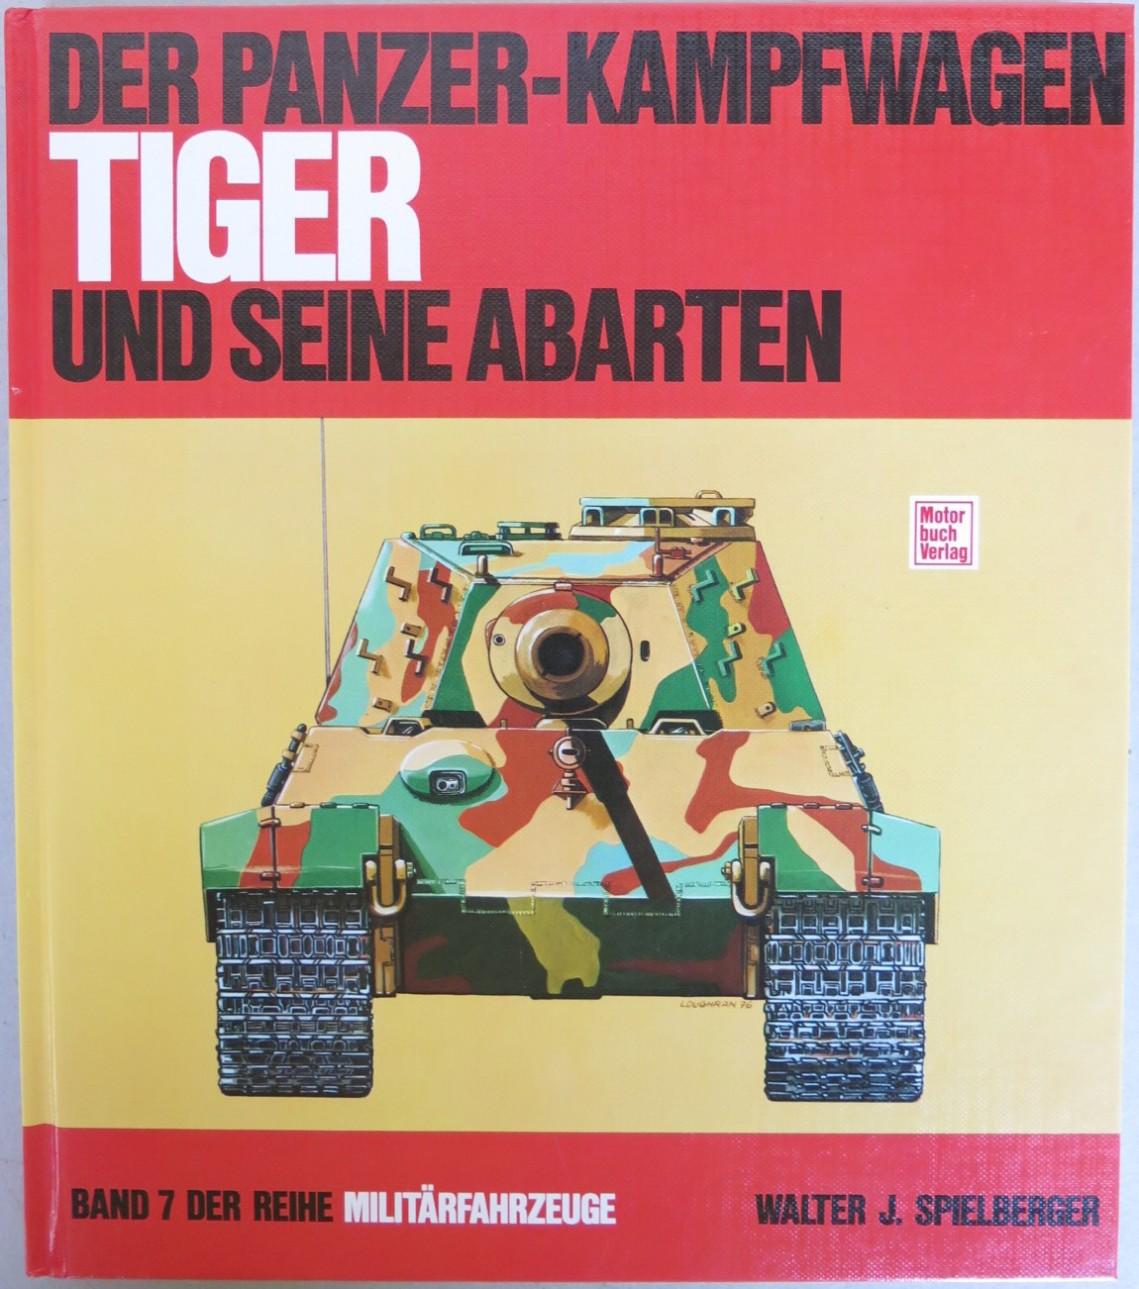 Der Panzerkampfwagen Tiger und seine Abarten. 4. Auflage [= Militärfahrzeuge; Band 7] - Spielberger, Walter J. - Doyle, Hilary L. (Maßstabskizzen)